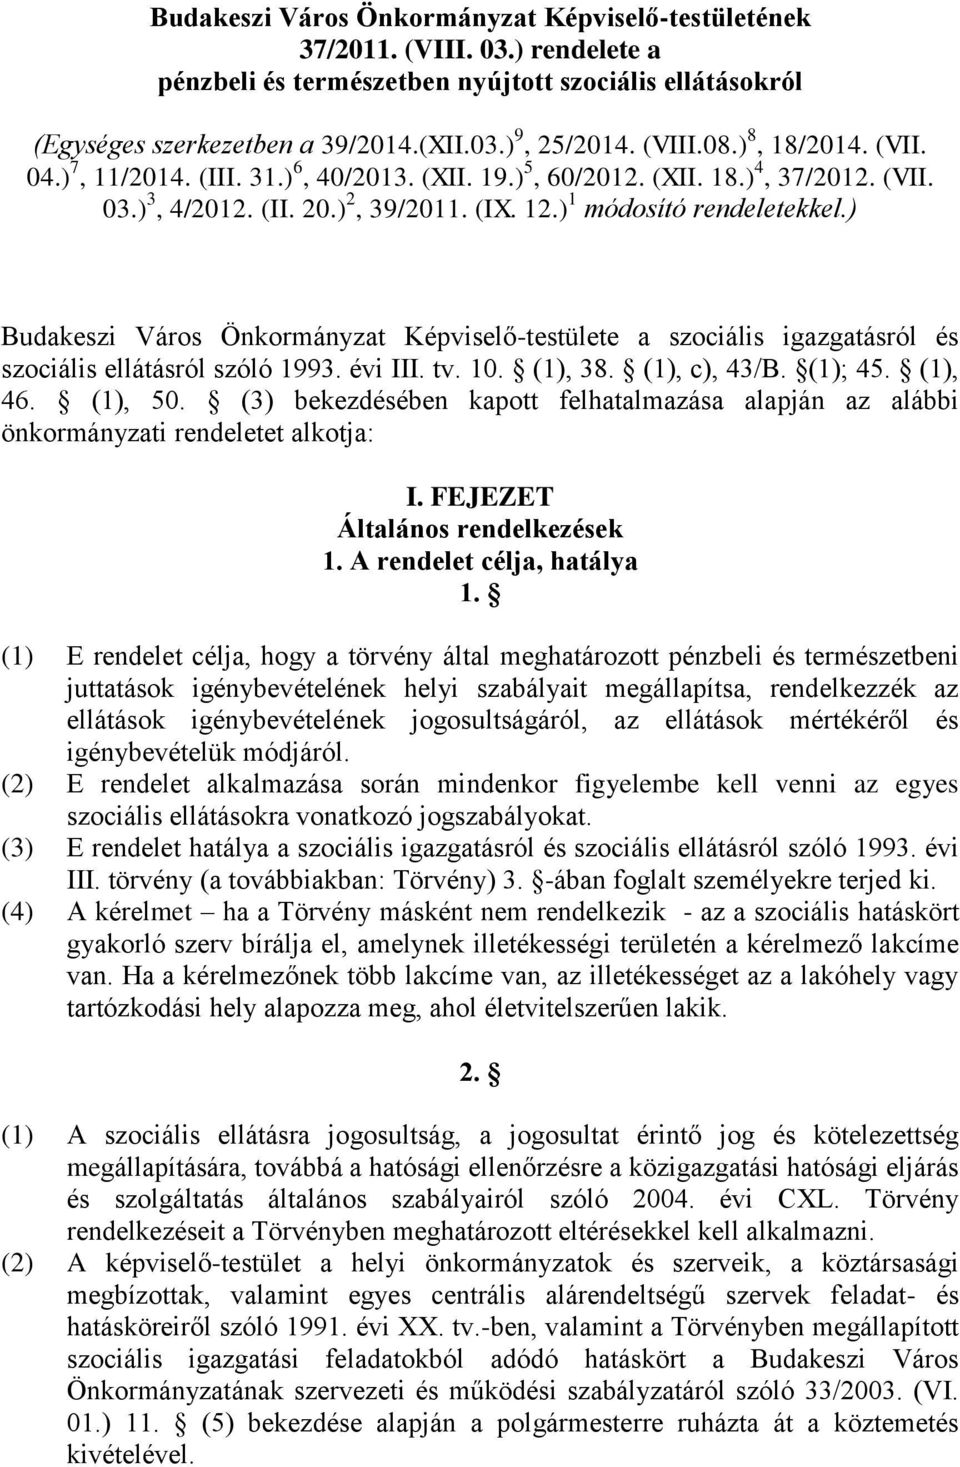 ) Budakeszi Város Önkormányzat Képviselő-testülete a szociális igazgatásról és szociális ellátásról szóló 1993. évi III. tv. 10. (1), 38. (1), c), 43/B. (1); 45. (1), 46. (1), 50.